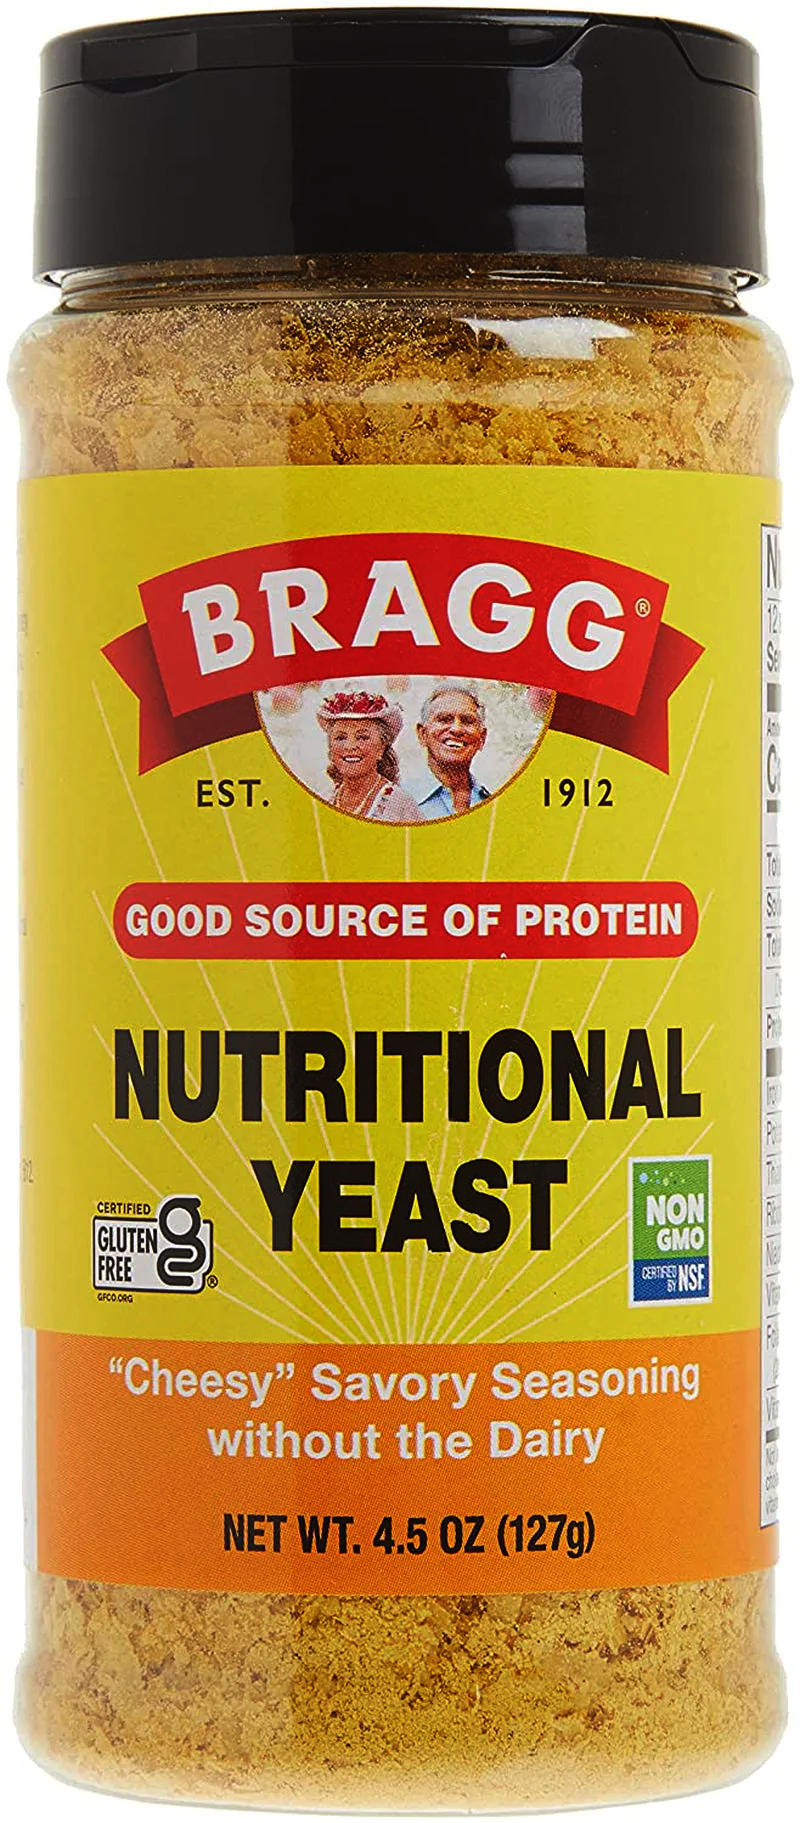 Bragg Nutritional Yeast Gluten-Free Chee